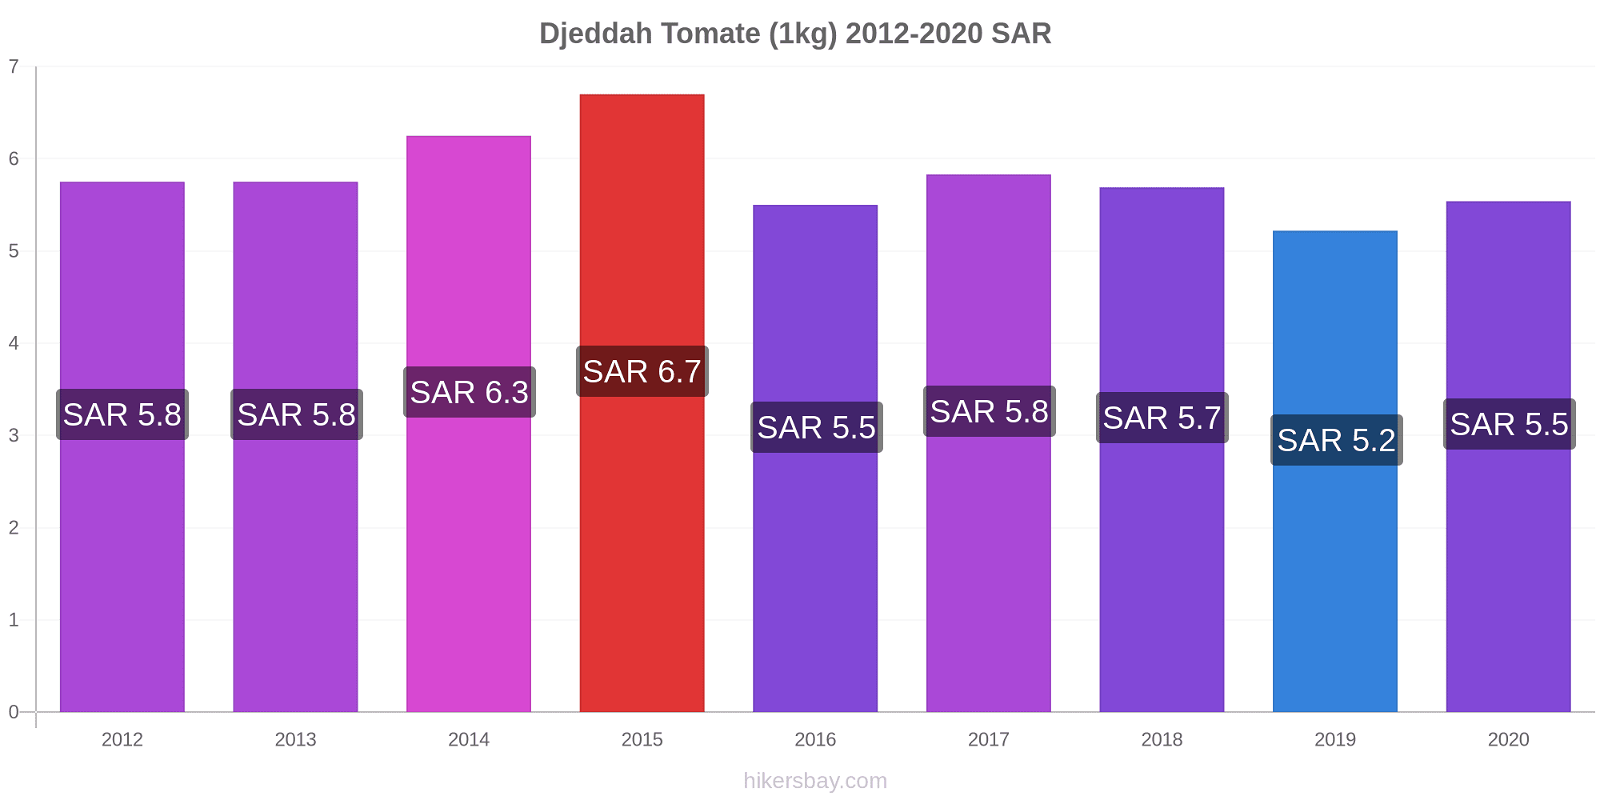 Djeddah changements de prix Tomate (1kg) hikersbay.com